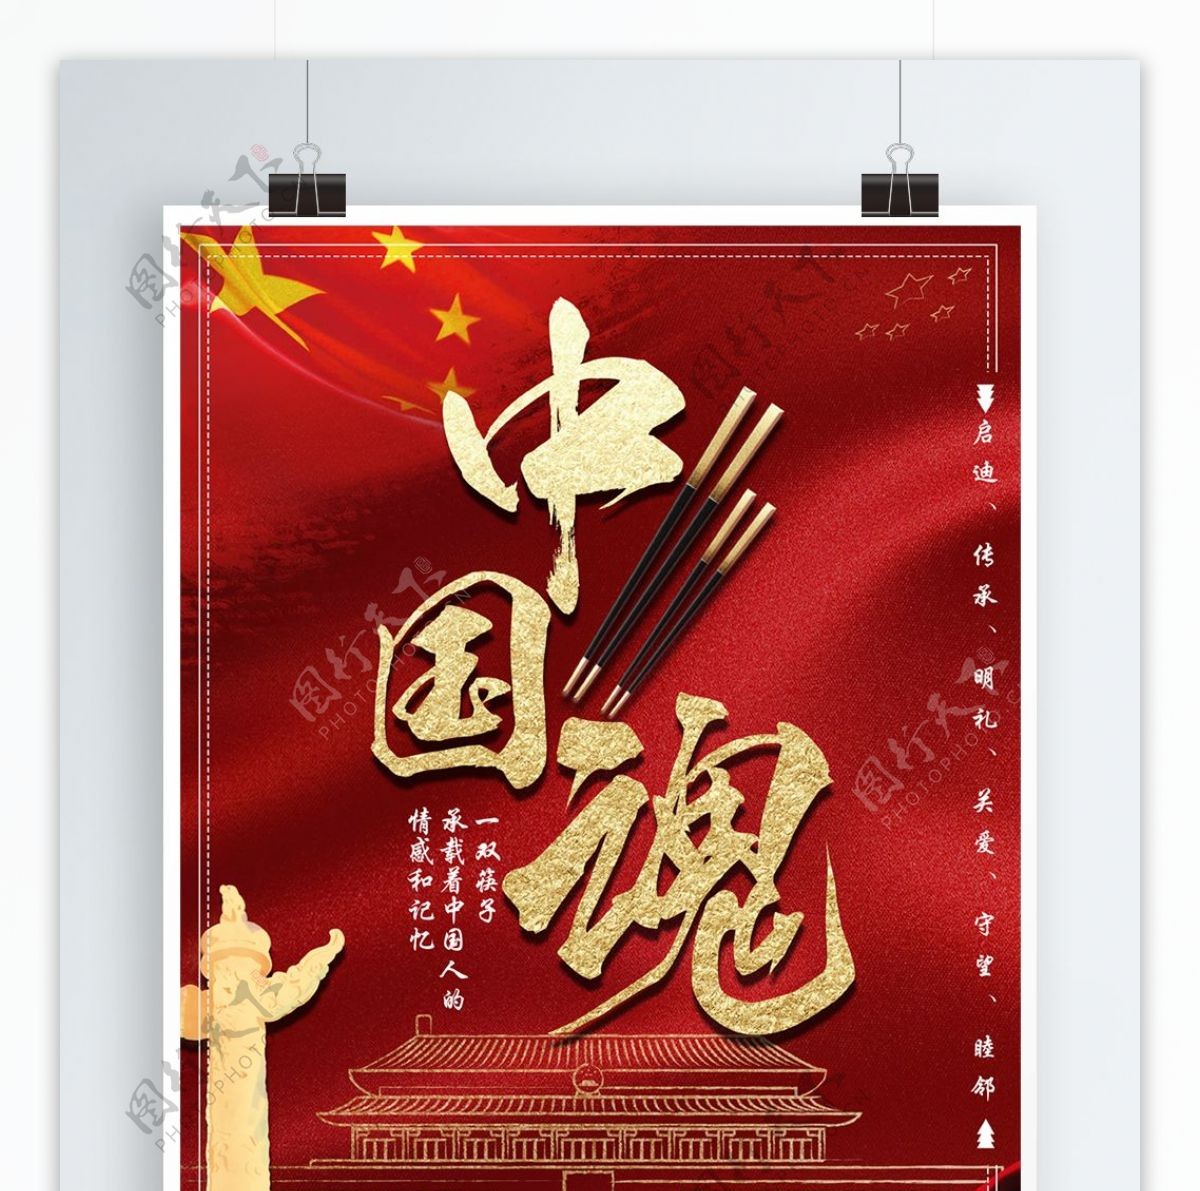 原创红色大气中国魂筷子海报